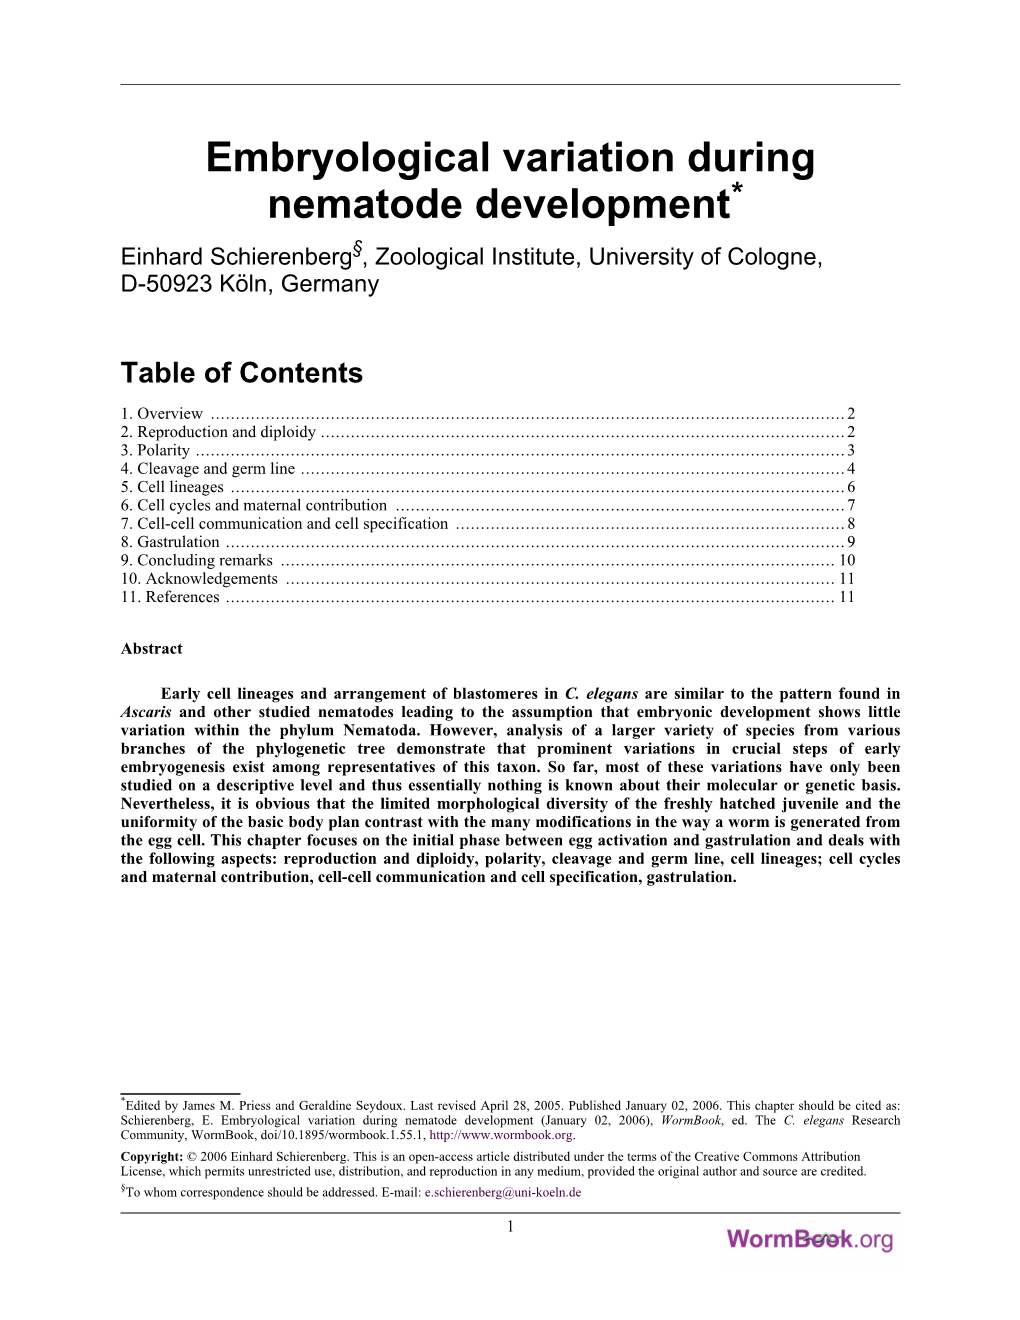 Embryological Variation During Nematode Development* §